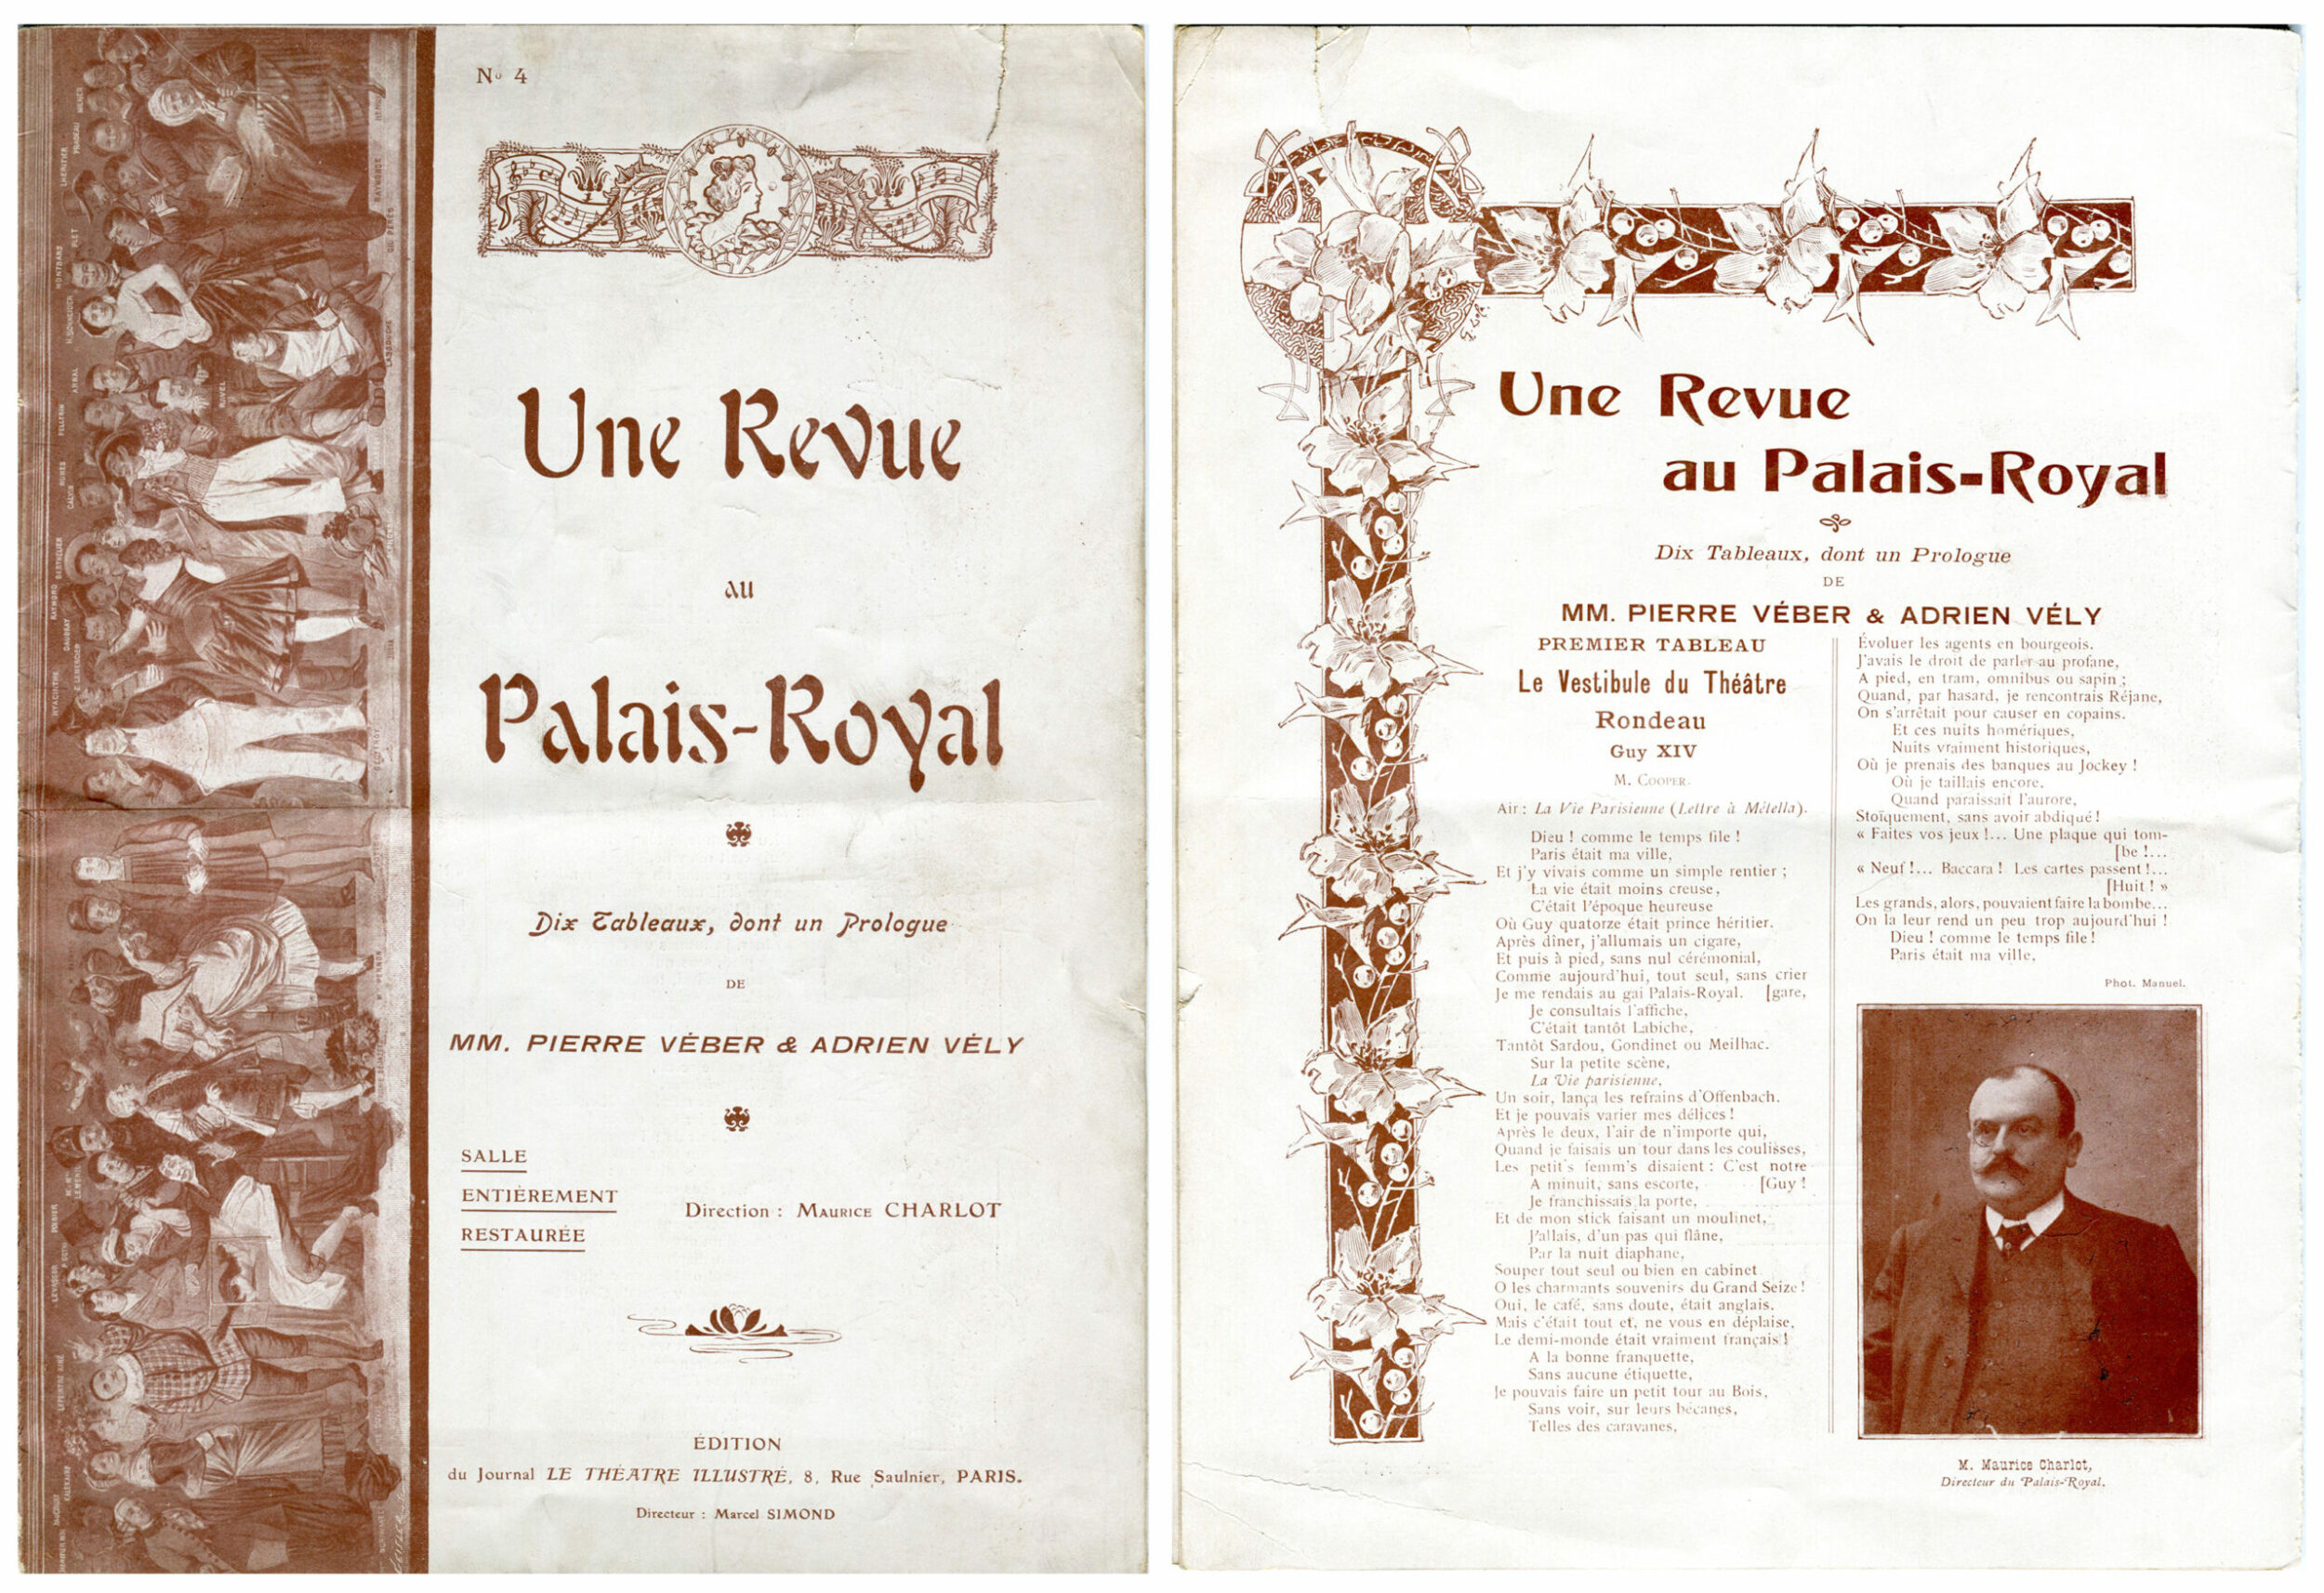 Programme du Théâtre du Palais-Royal pour Une Revue au Palais-Royal, Paris, 19.5x27, 1905